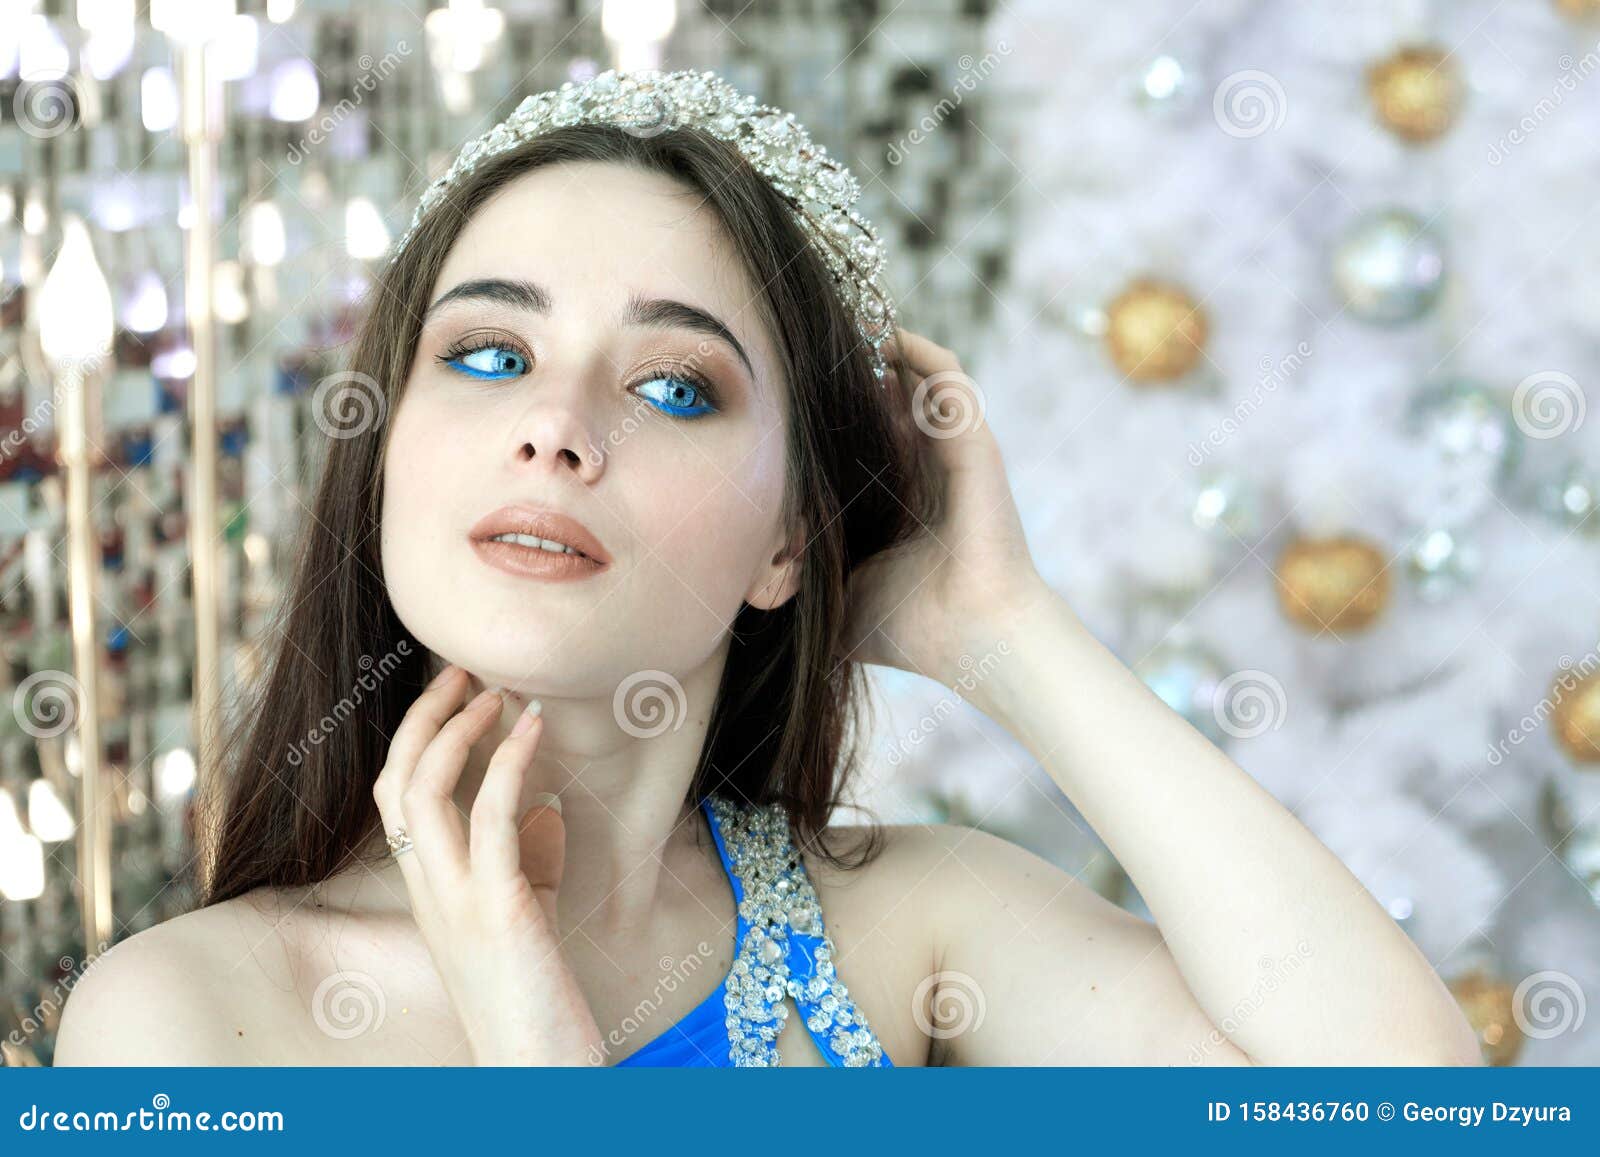 Blue eye princess Princess Pinky